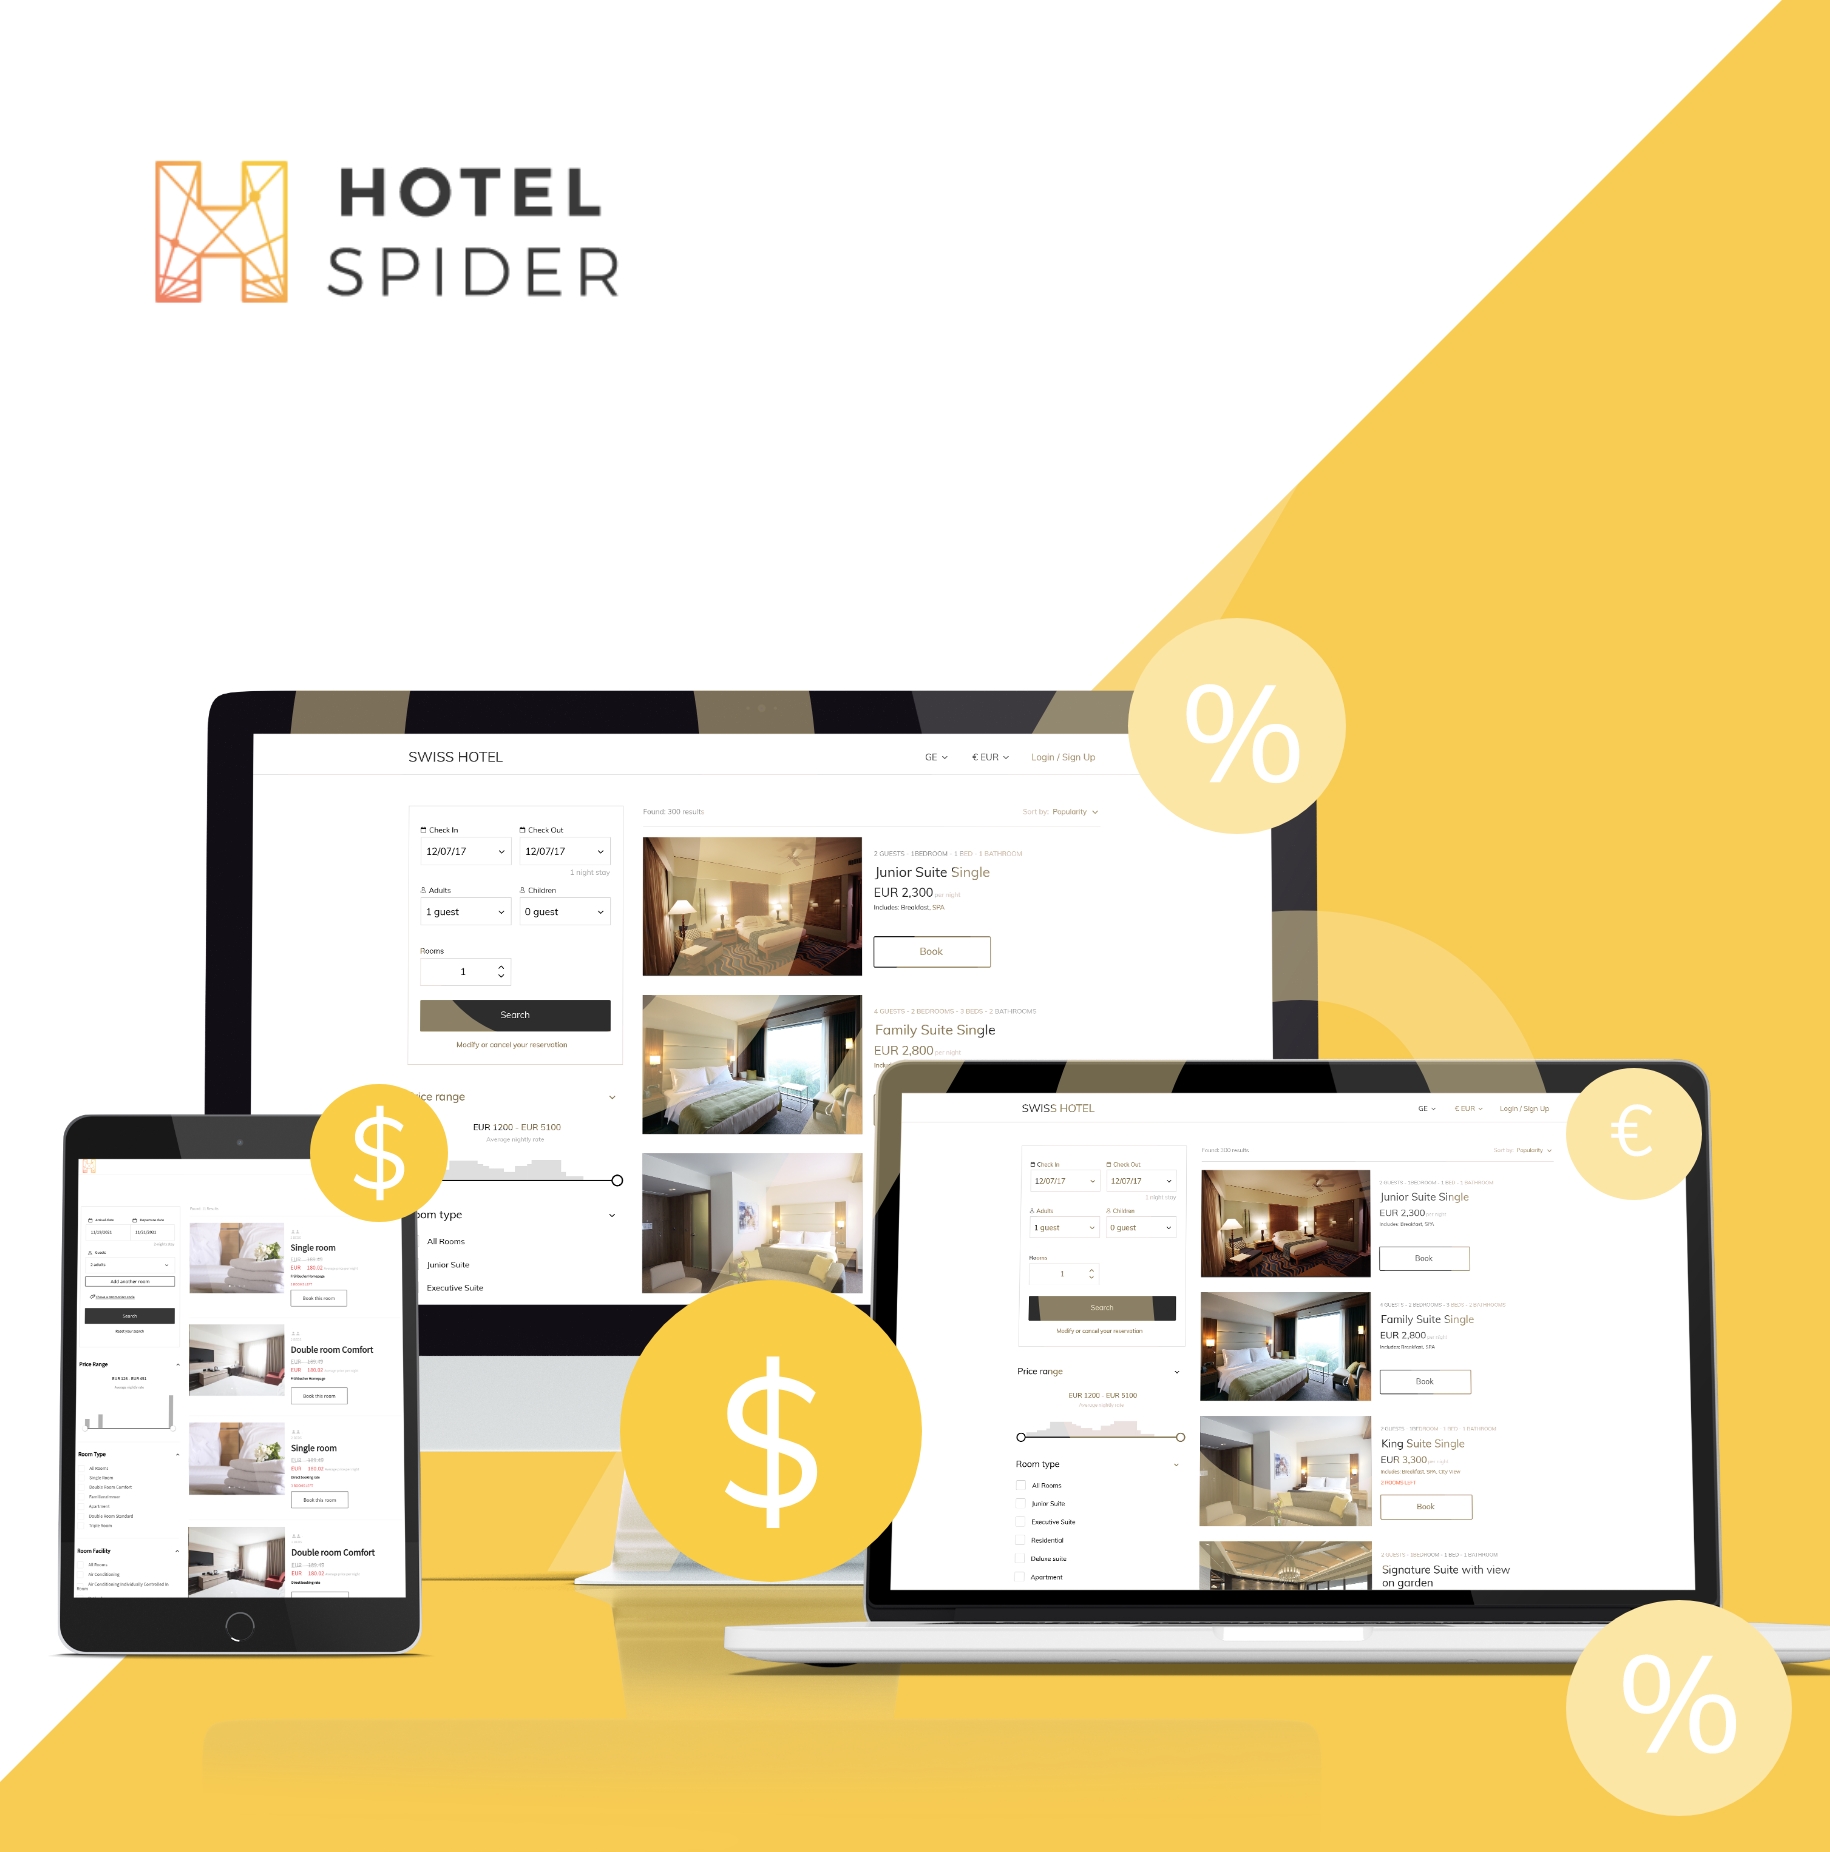 TN-Hotel-spider-booking-engine.jpg